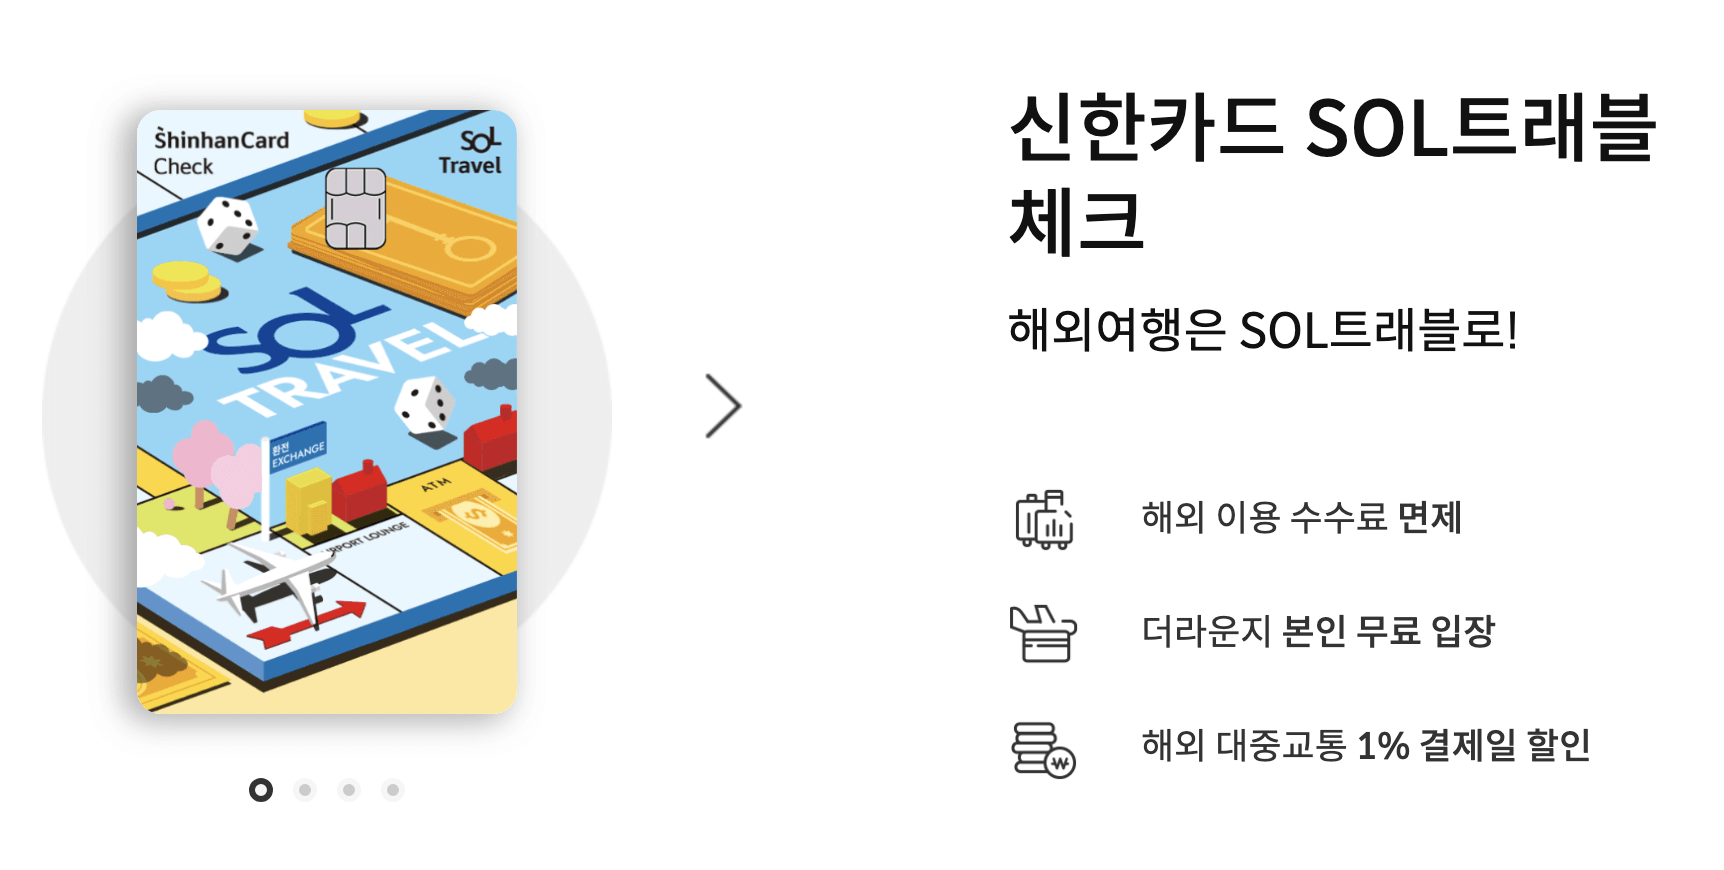 신한 sol 트래블 체크카드 혜택 총정리 (더라운지 공항라운지 ,100%우대)